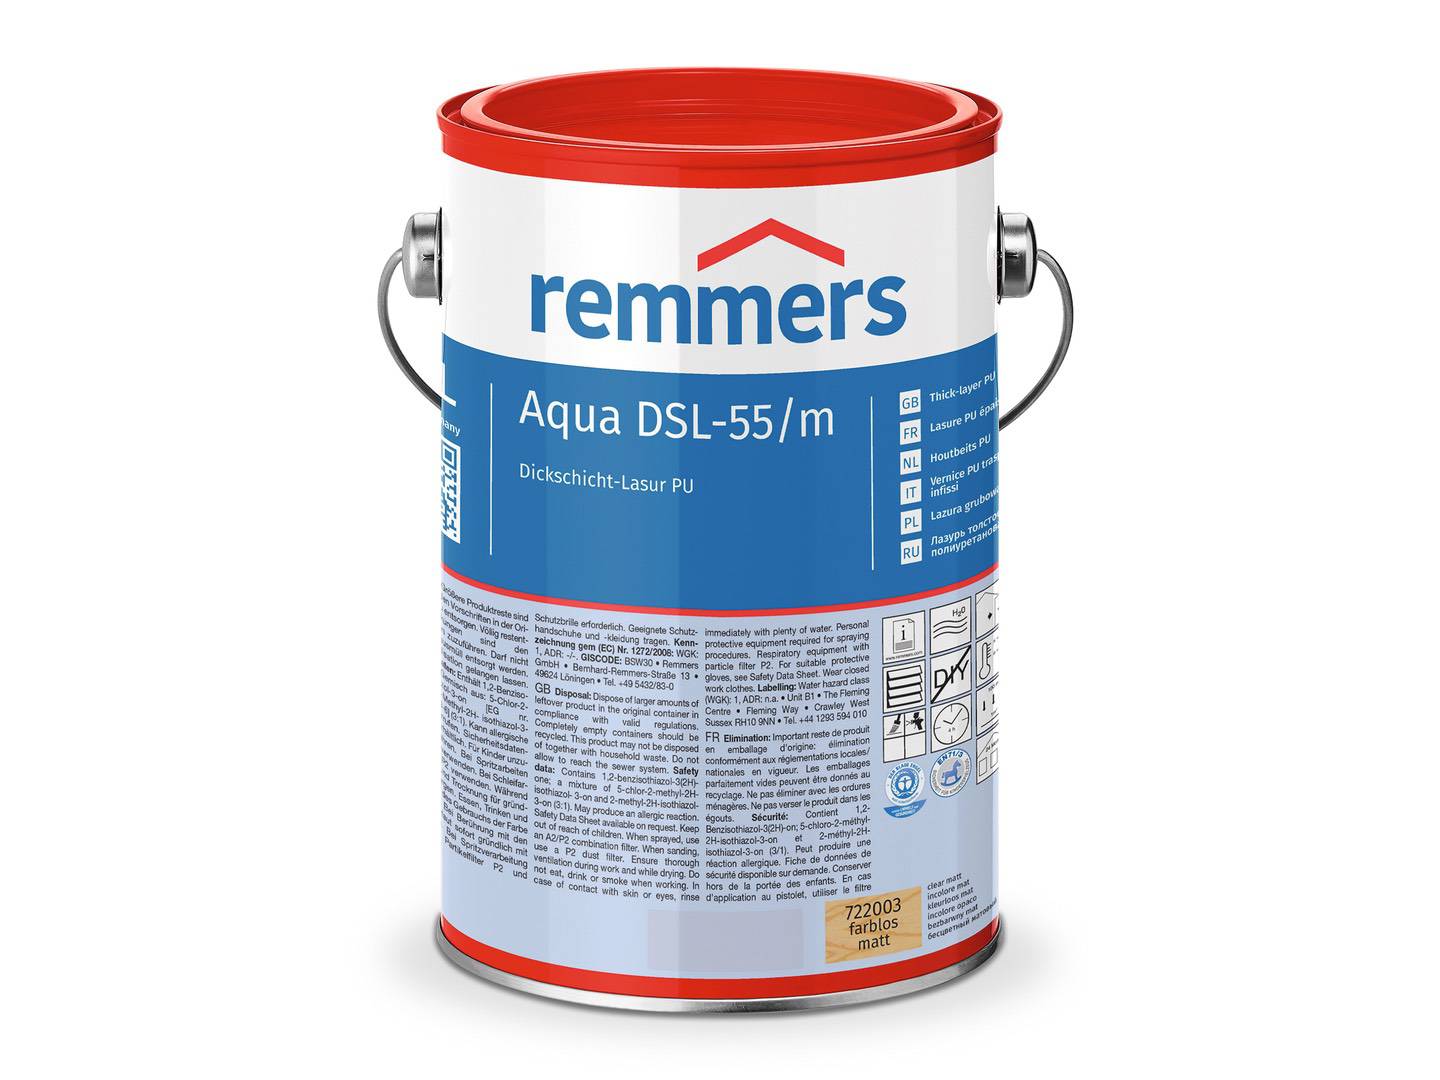 REMMERS Aqua DSL-55-Dickschicht-Lasur PU eiche hell (RC-365) seidenglänzend 2,50 l